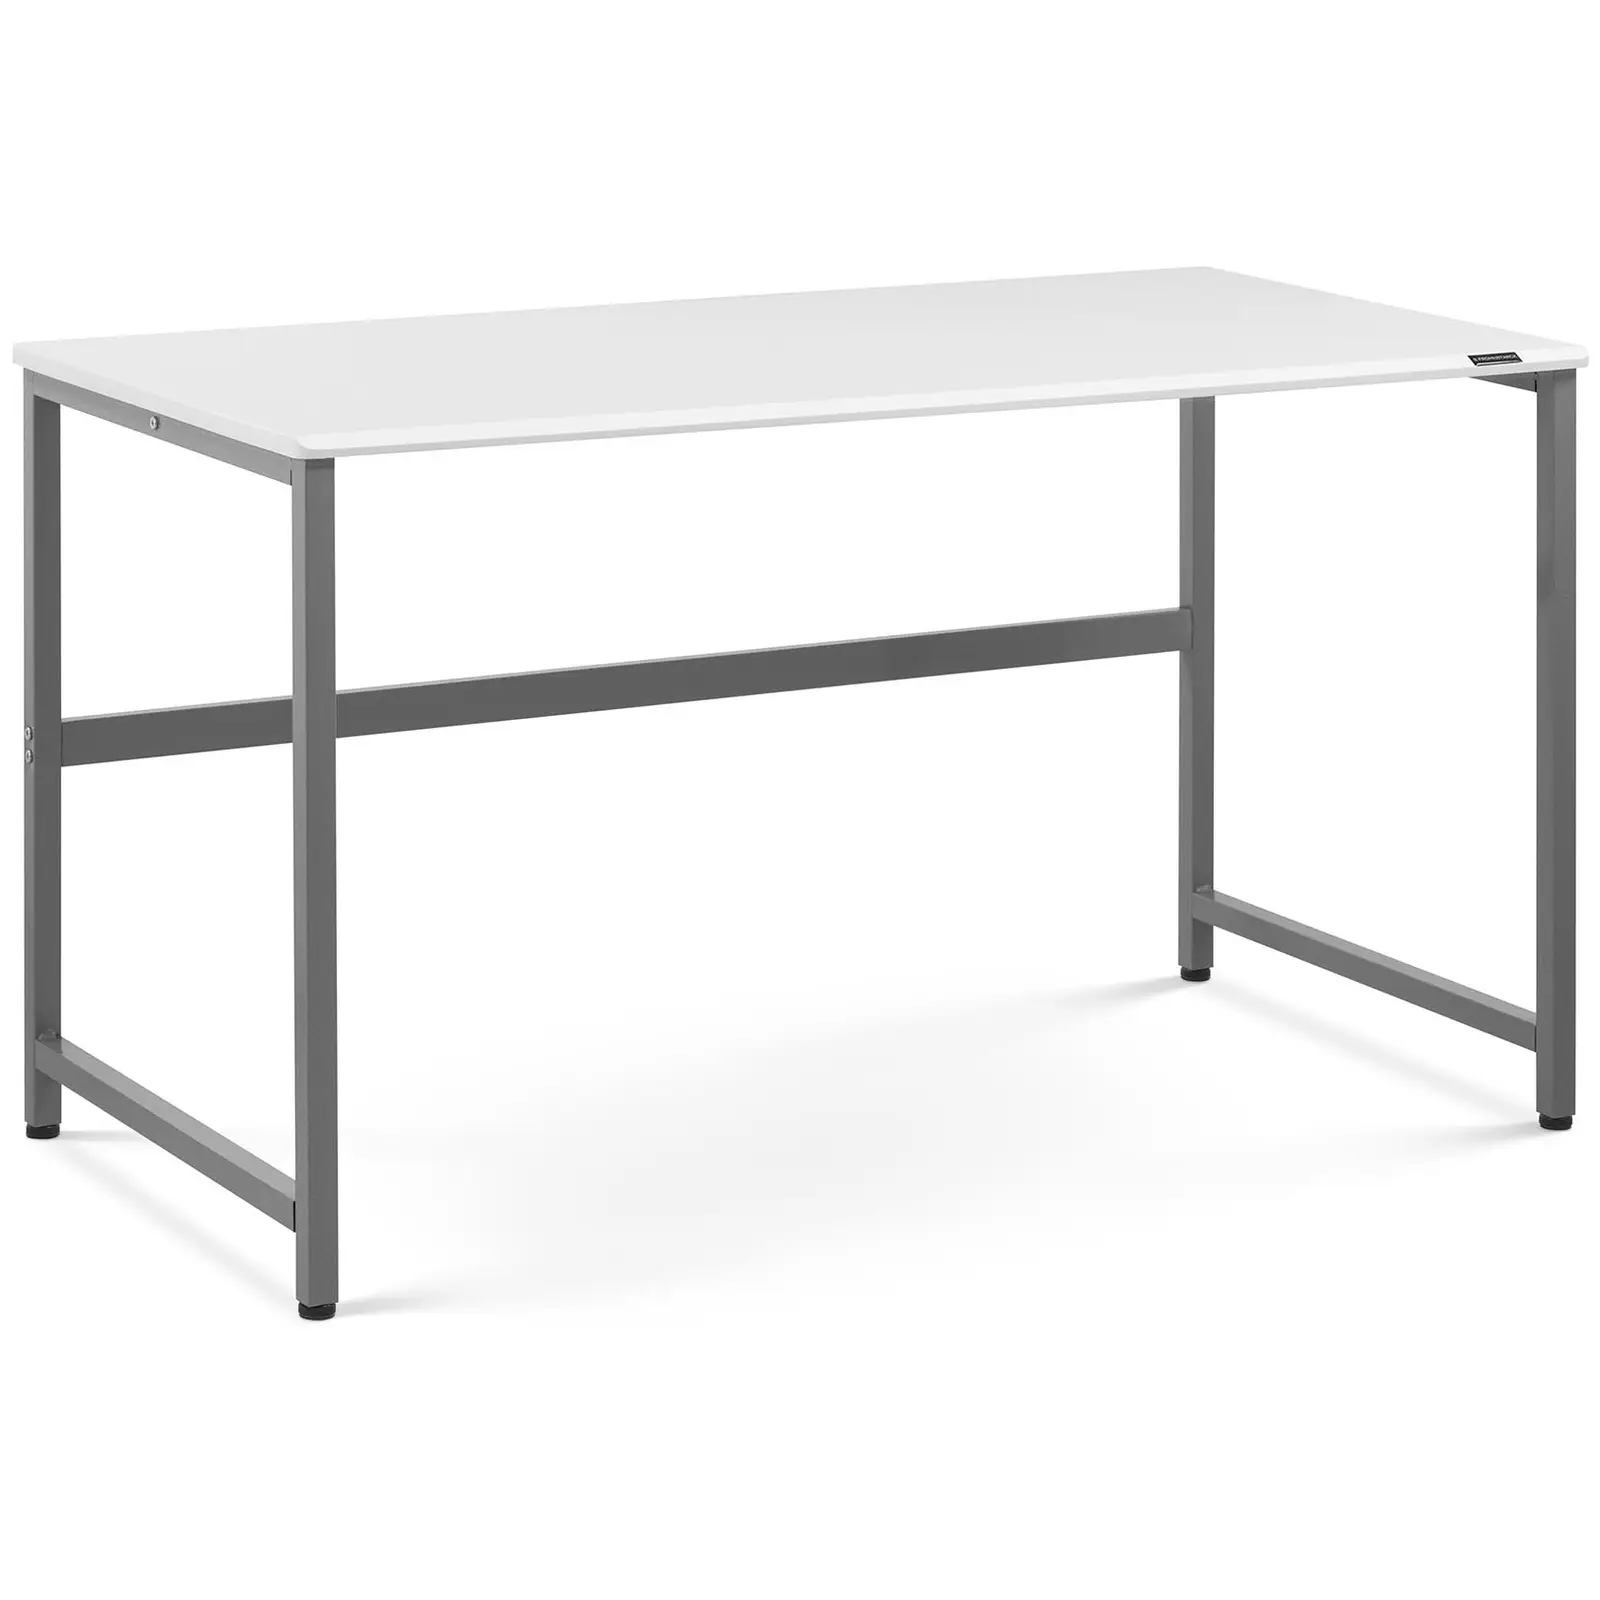 Schreibtisch - 120 x 60 cm - weiß / grau